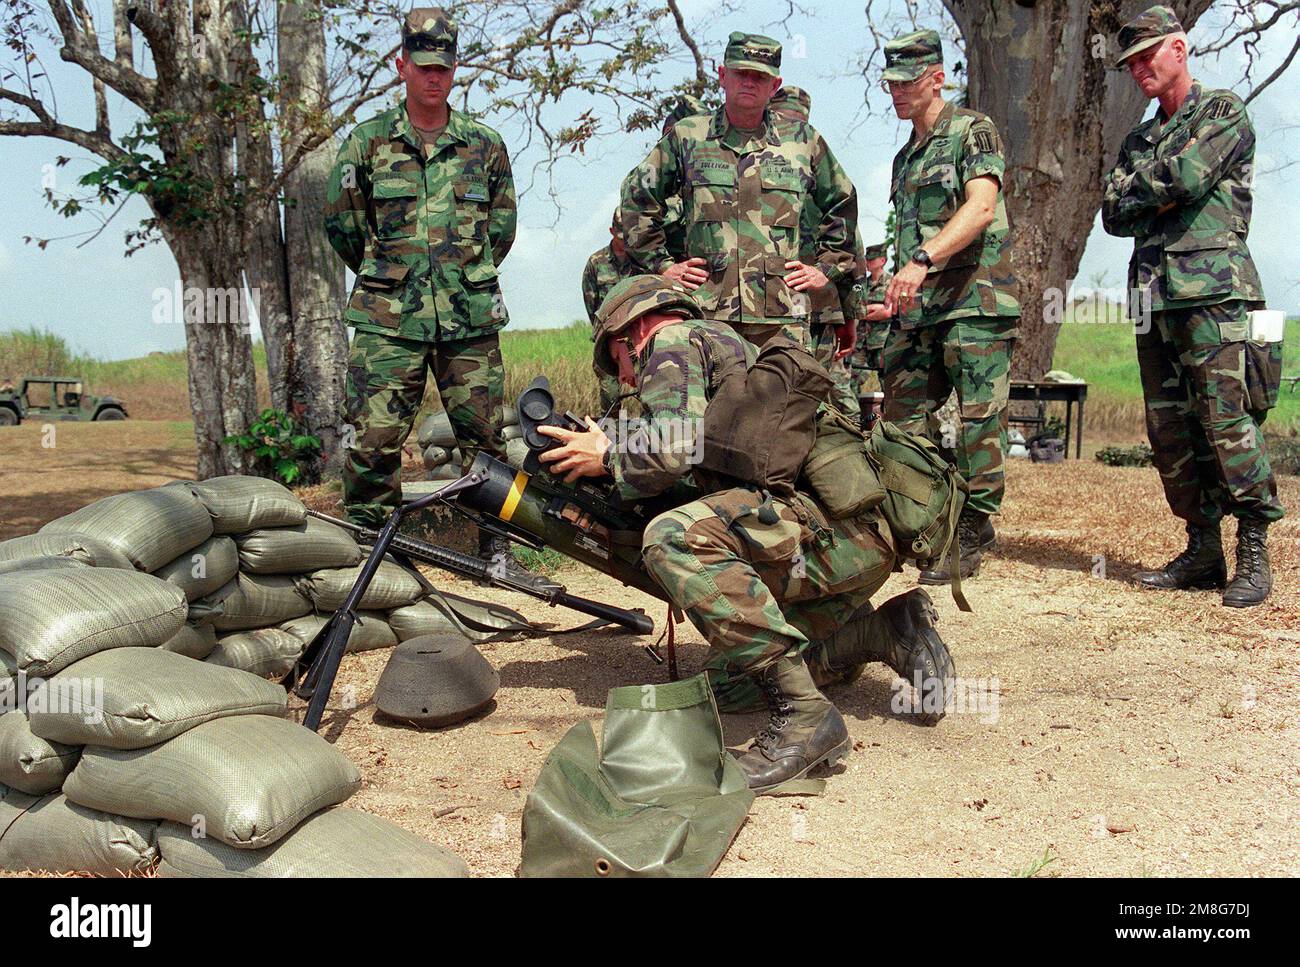 GEN. Gordon R. Sullivan, Stati Uniti Il capo di stato maggiore dell'esercito, Center, è presente come membro del Battaglione DEL 1st, fanteria del 508th (Airborne), collega l'unità visiva a un'arma anticarro M-47 Dragon durante un'esercitazione combinata a fuoco vivo. Base: Fort Kobbe Paese: Panama(PAN) Foto Stock